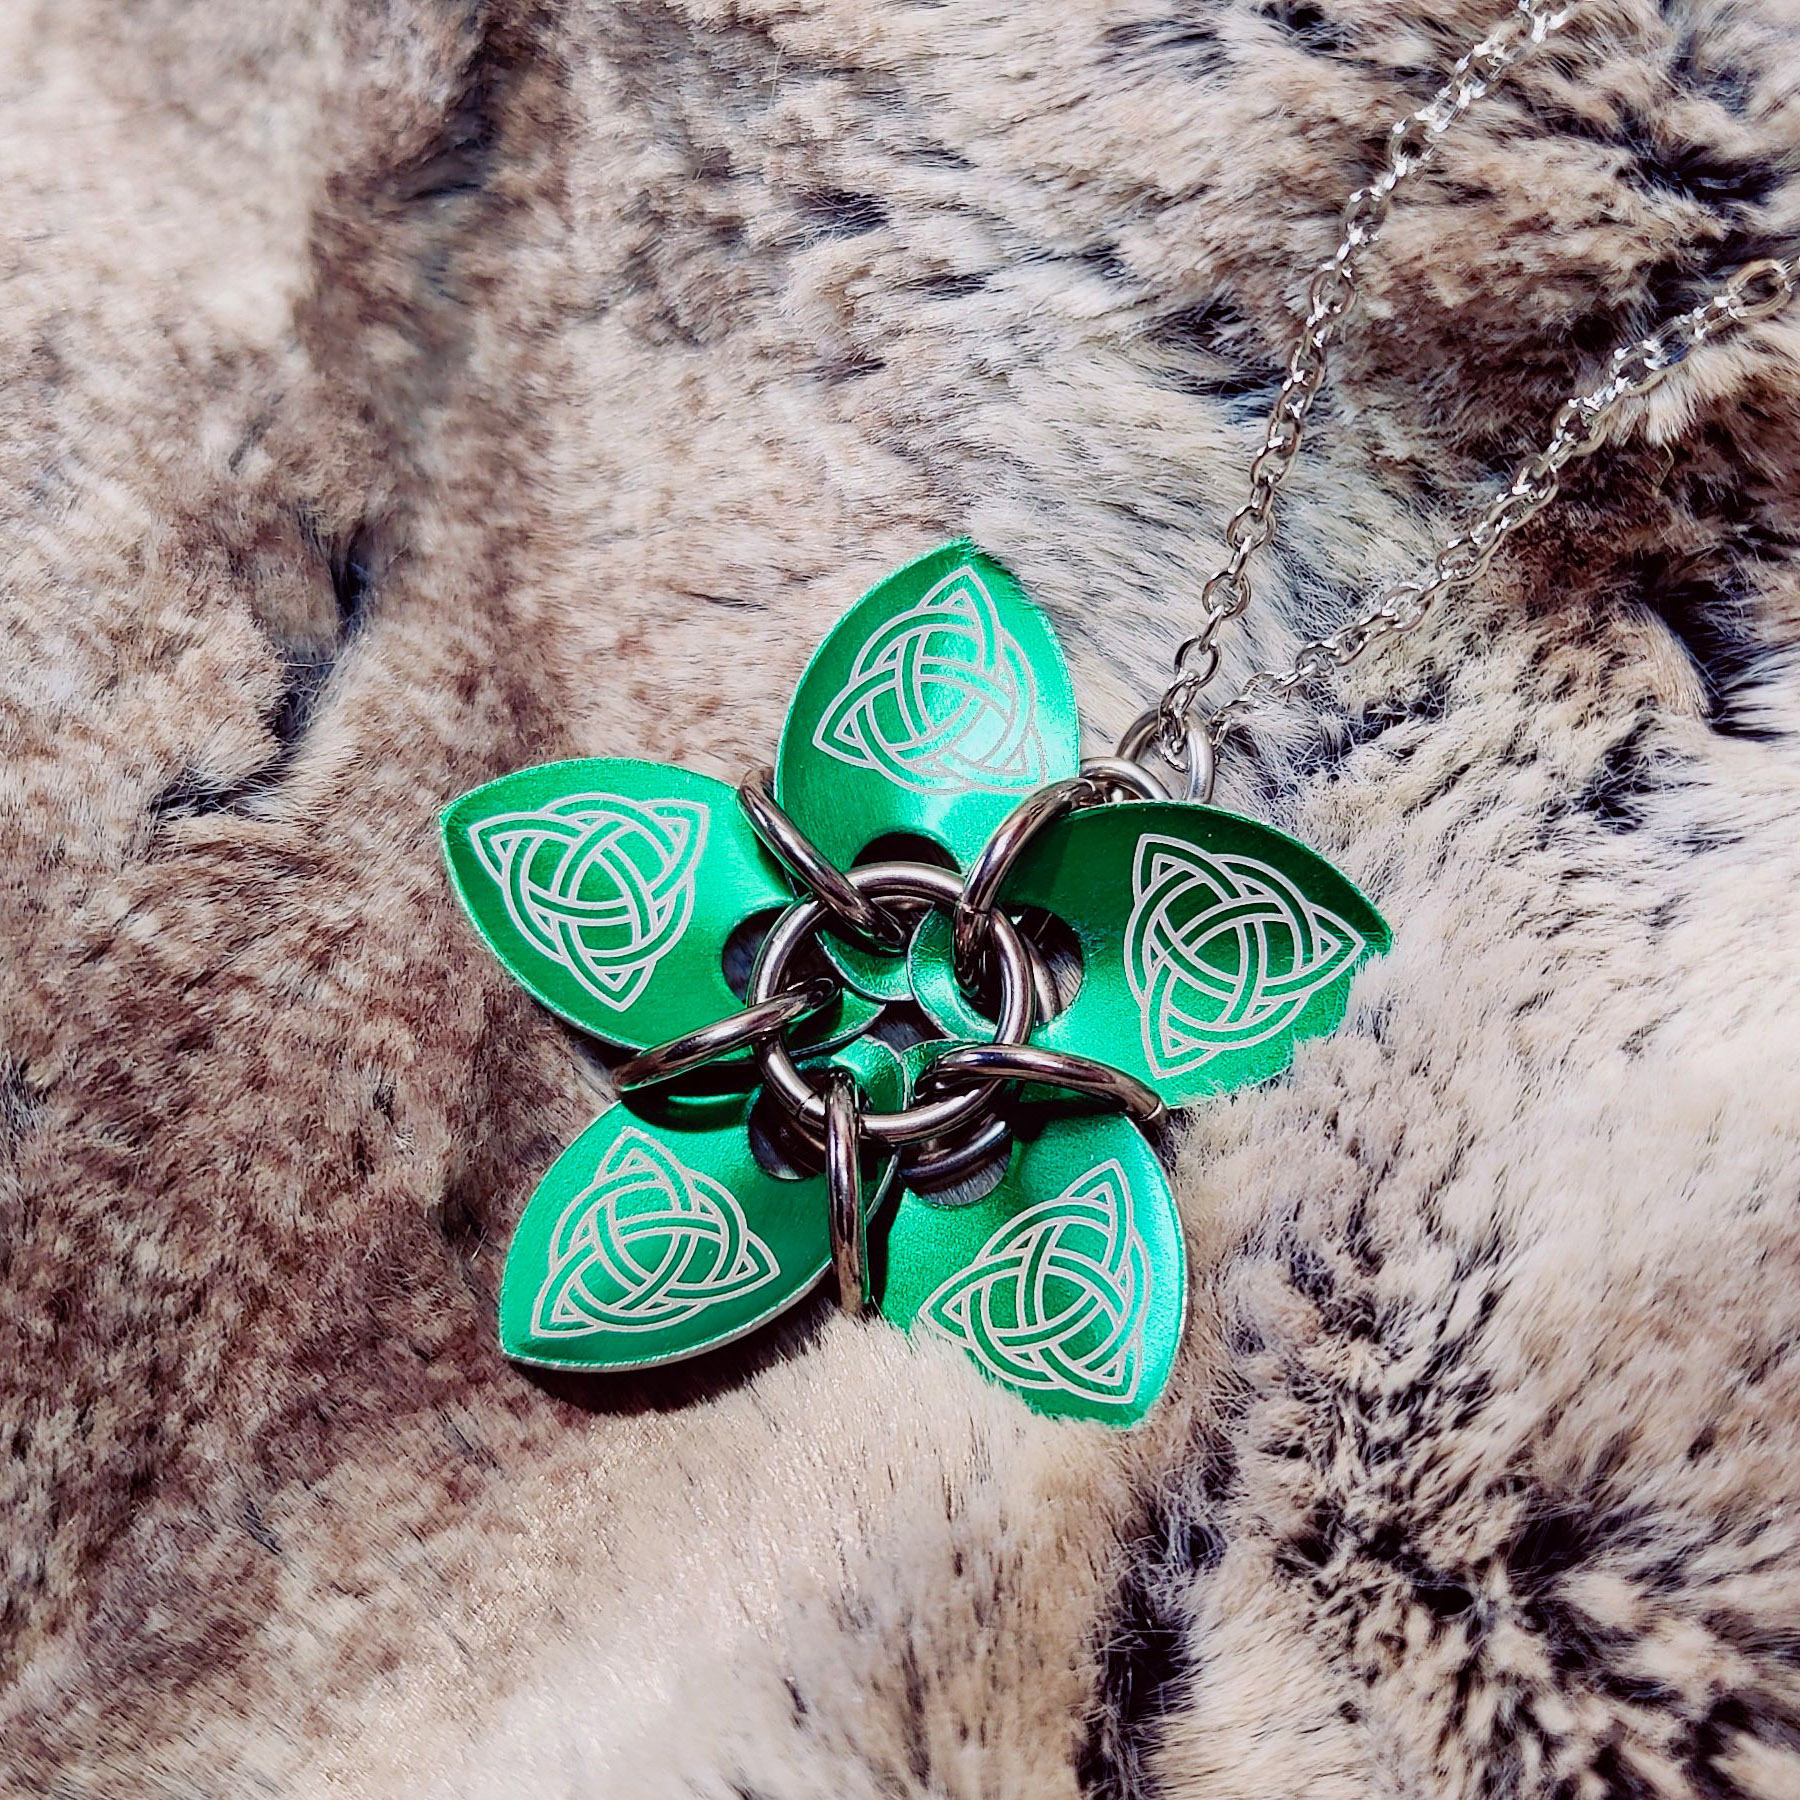 Les quatre photos montrent des pendentifs similaires : ils sont composés de plusieurs écailles qui forment une fleur, retenues par des anneaux. Ici, la fleur est vertes avec des motifs celtiques.